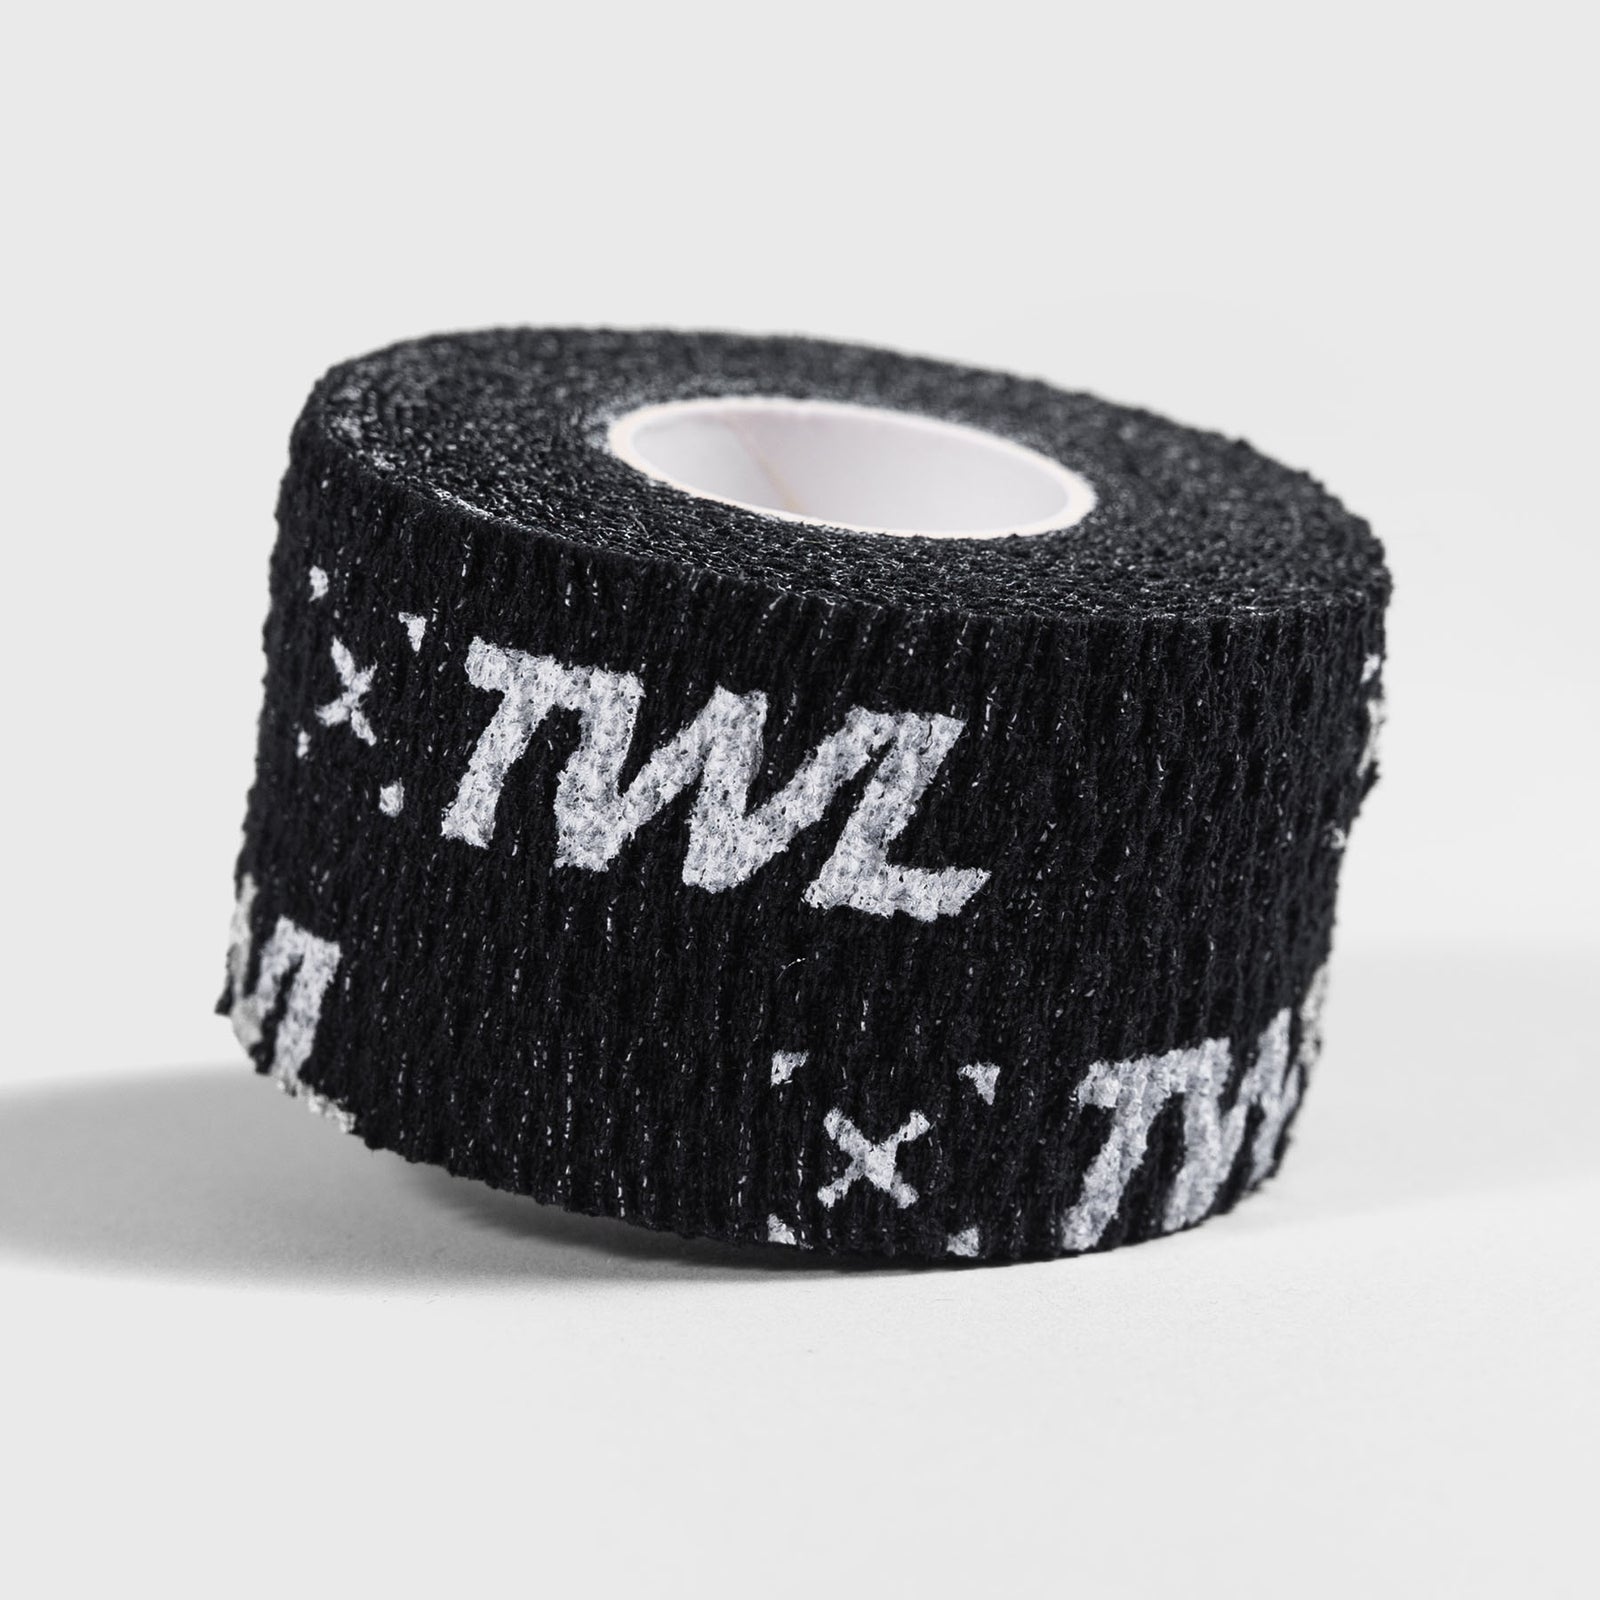 TWL - Power Finger Tape - Black –